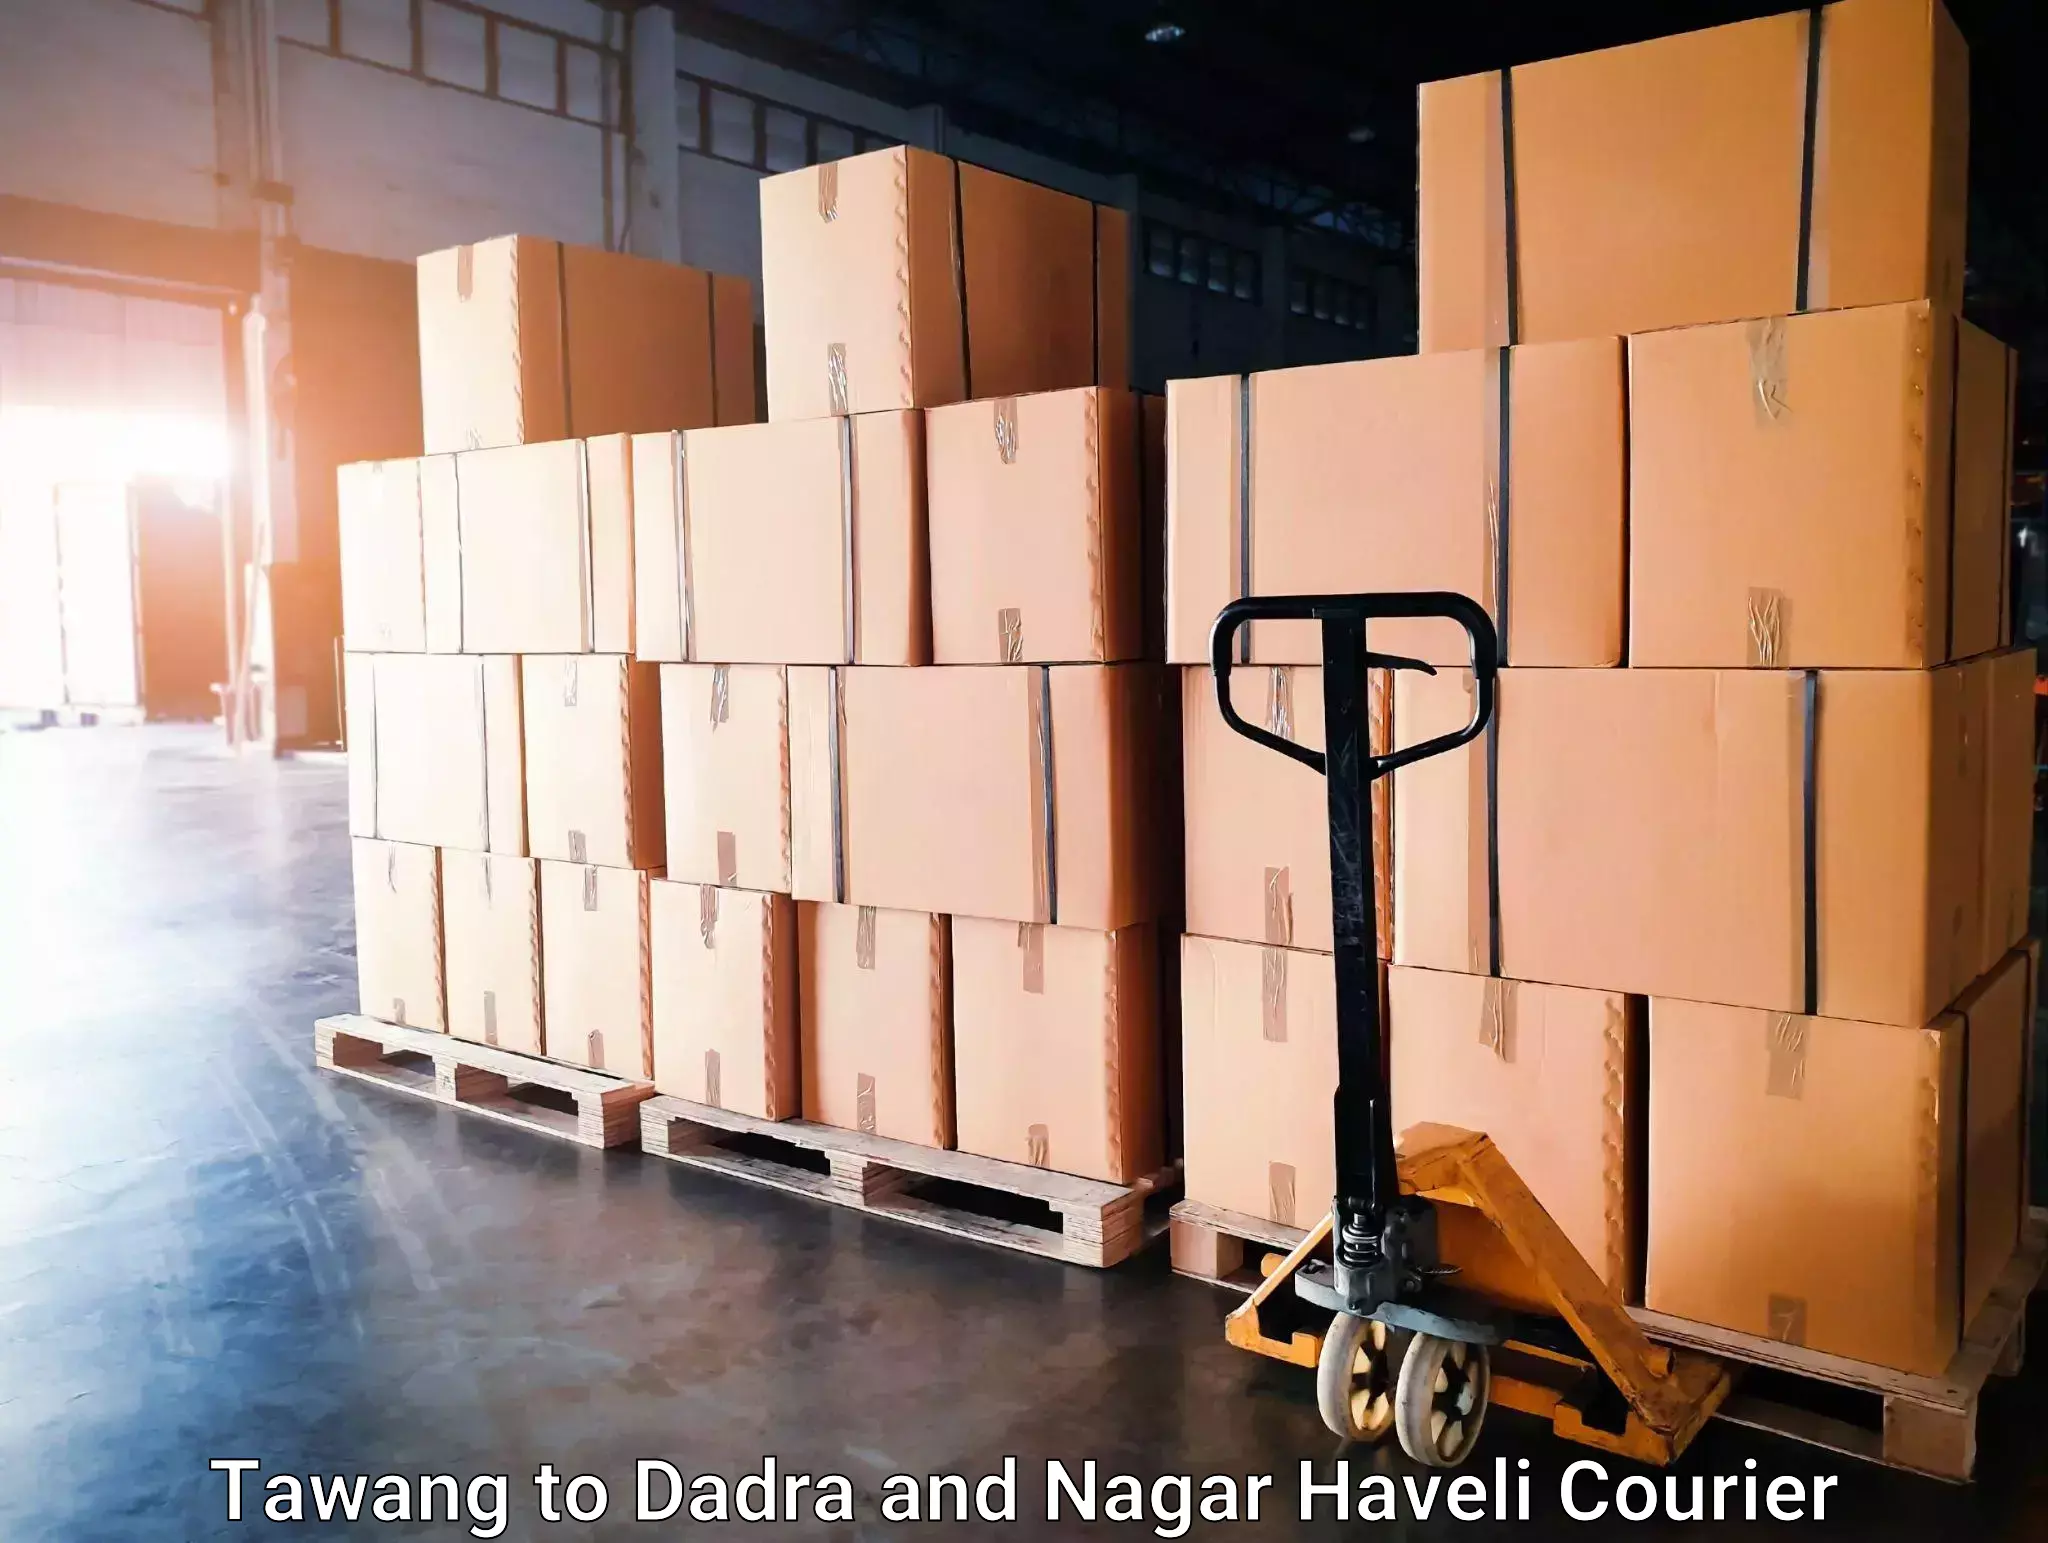 Global logistics network Tawang to Dadra and Nagar Haveli